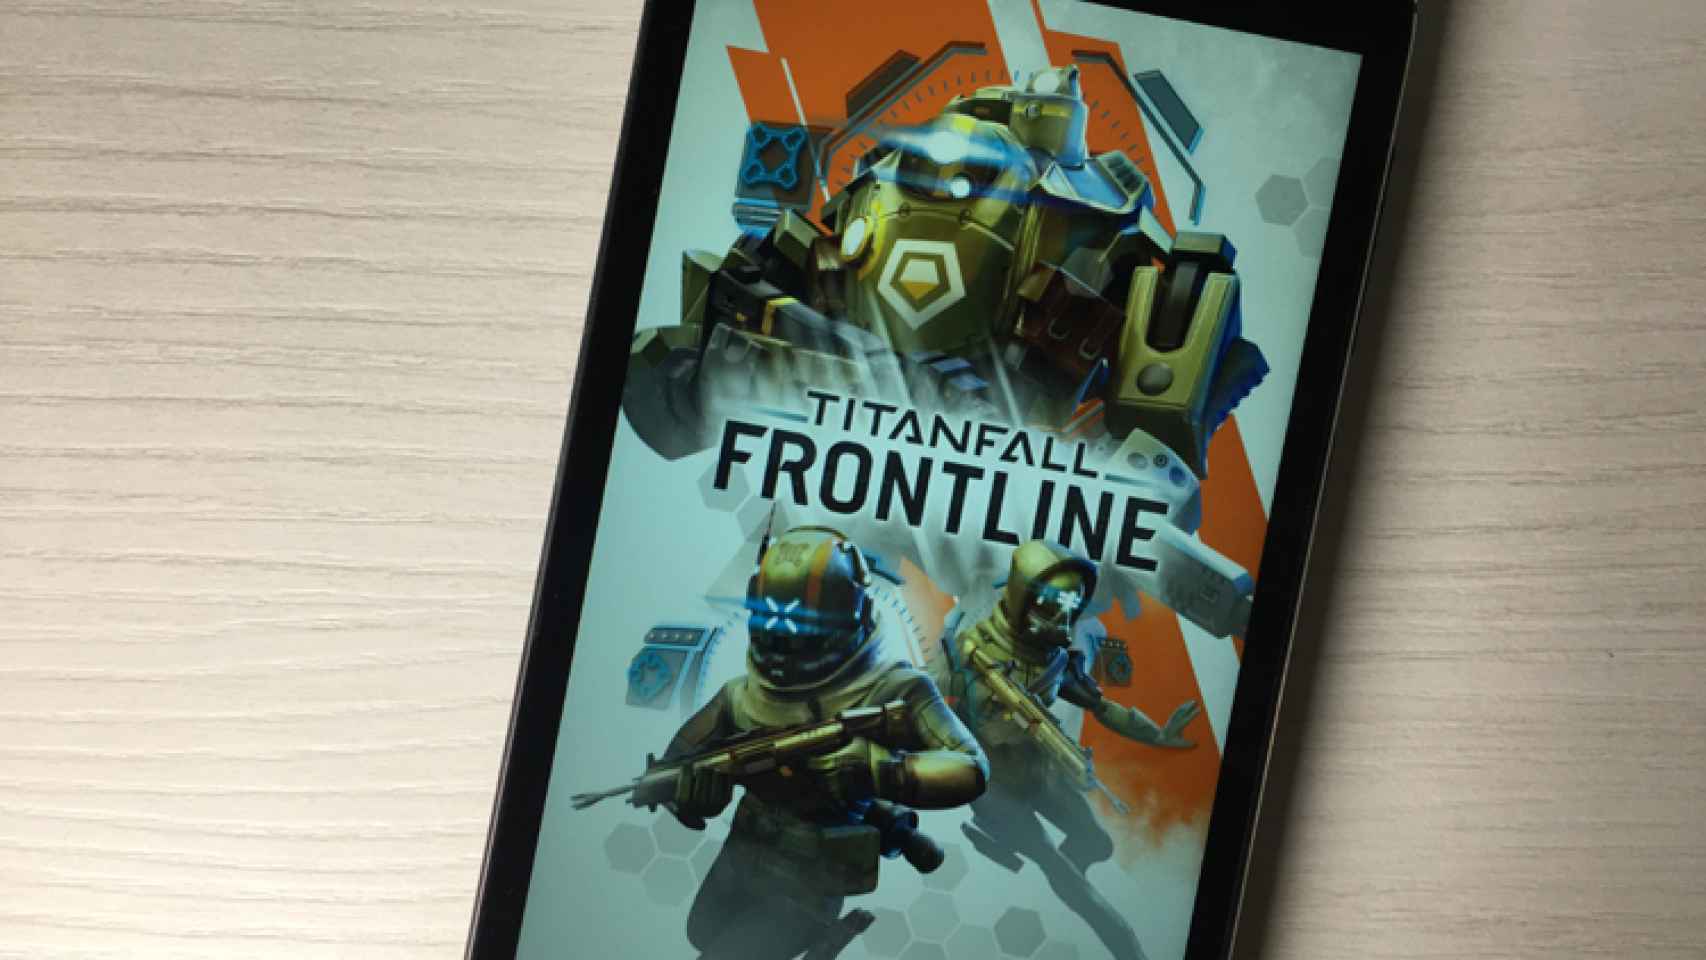 Prueba ya el juego de Titanfall: Frontline en Android [APK]